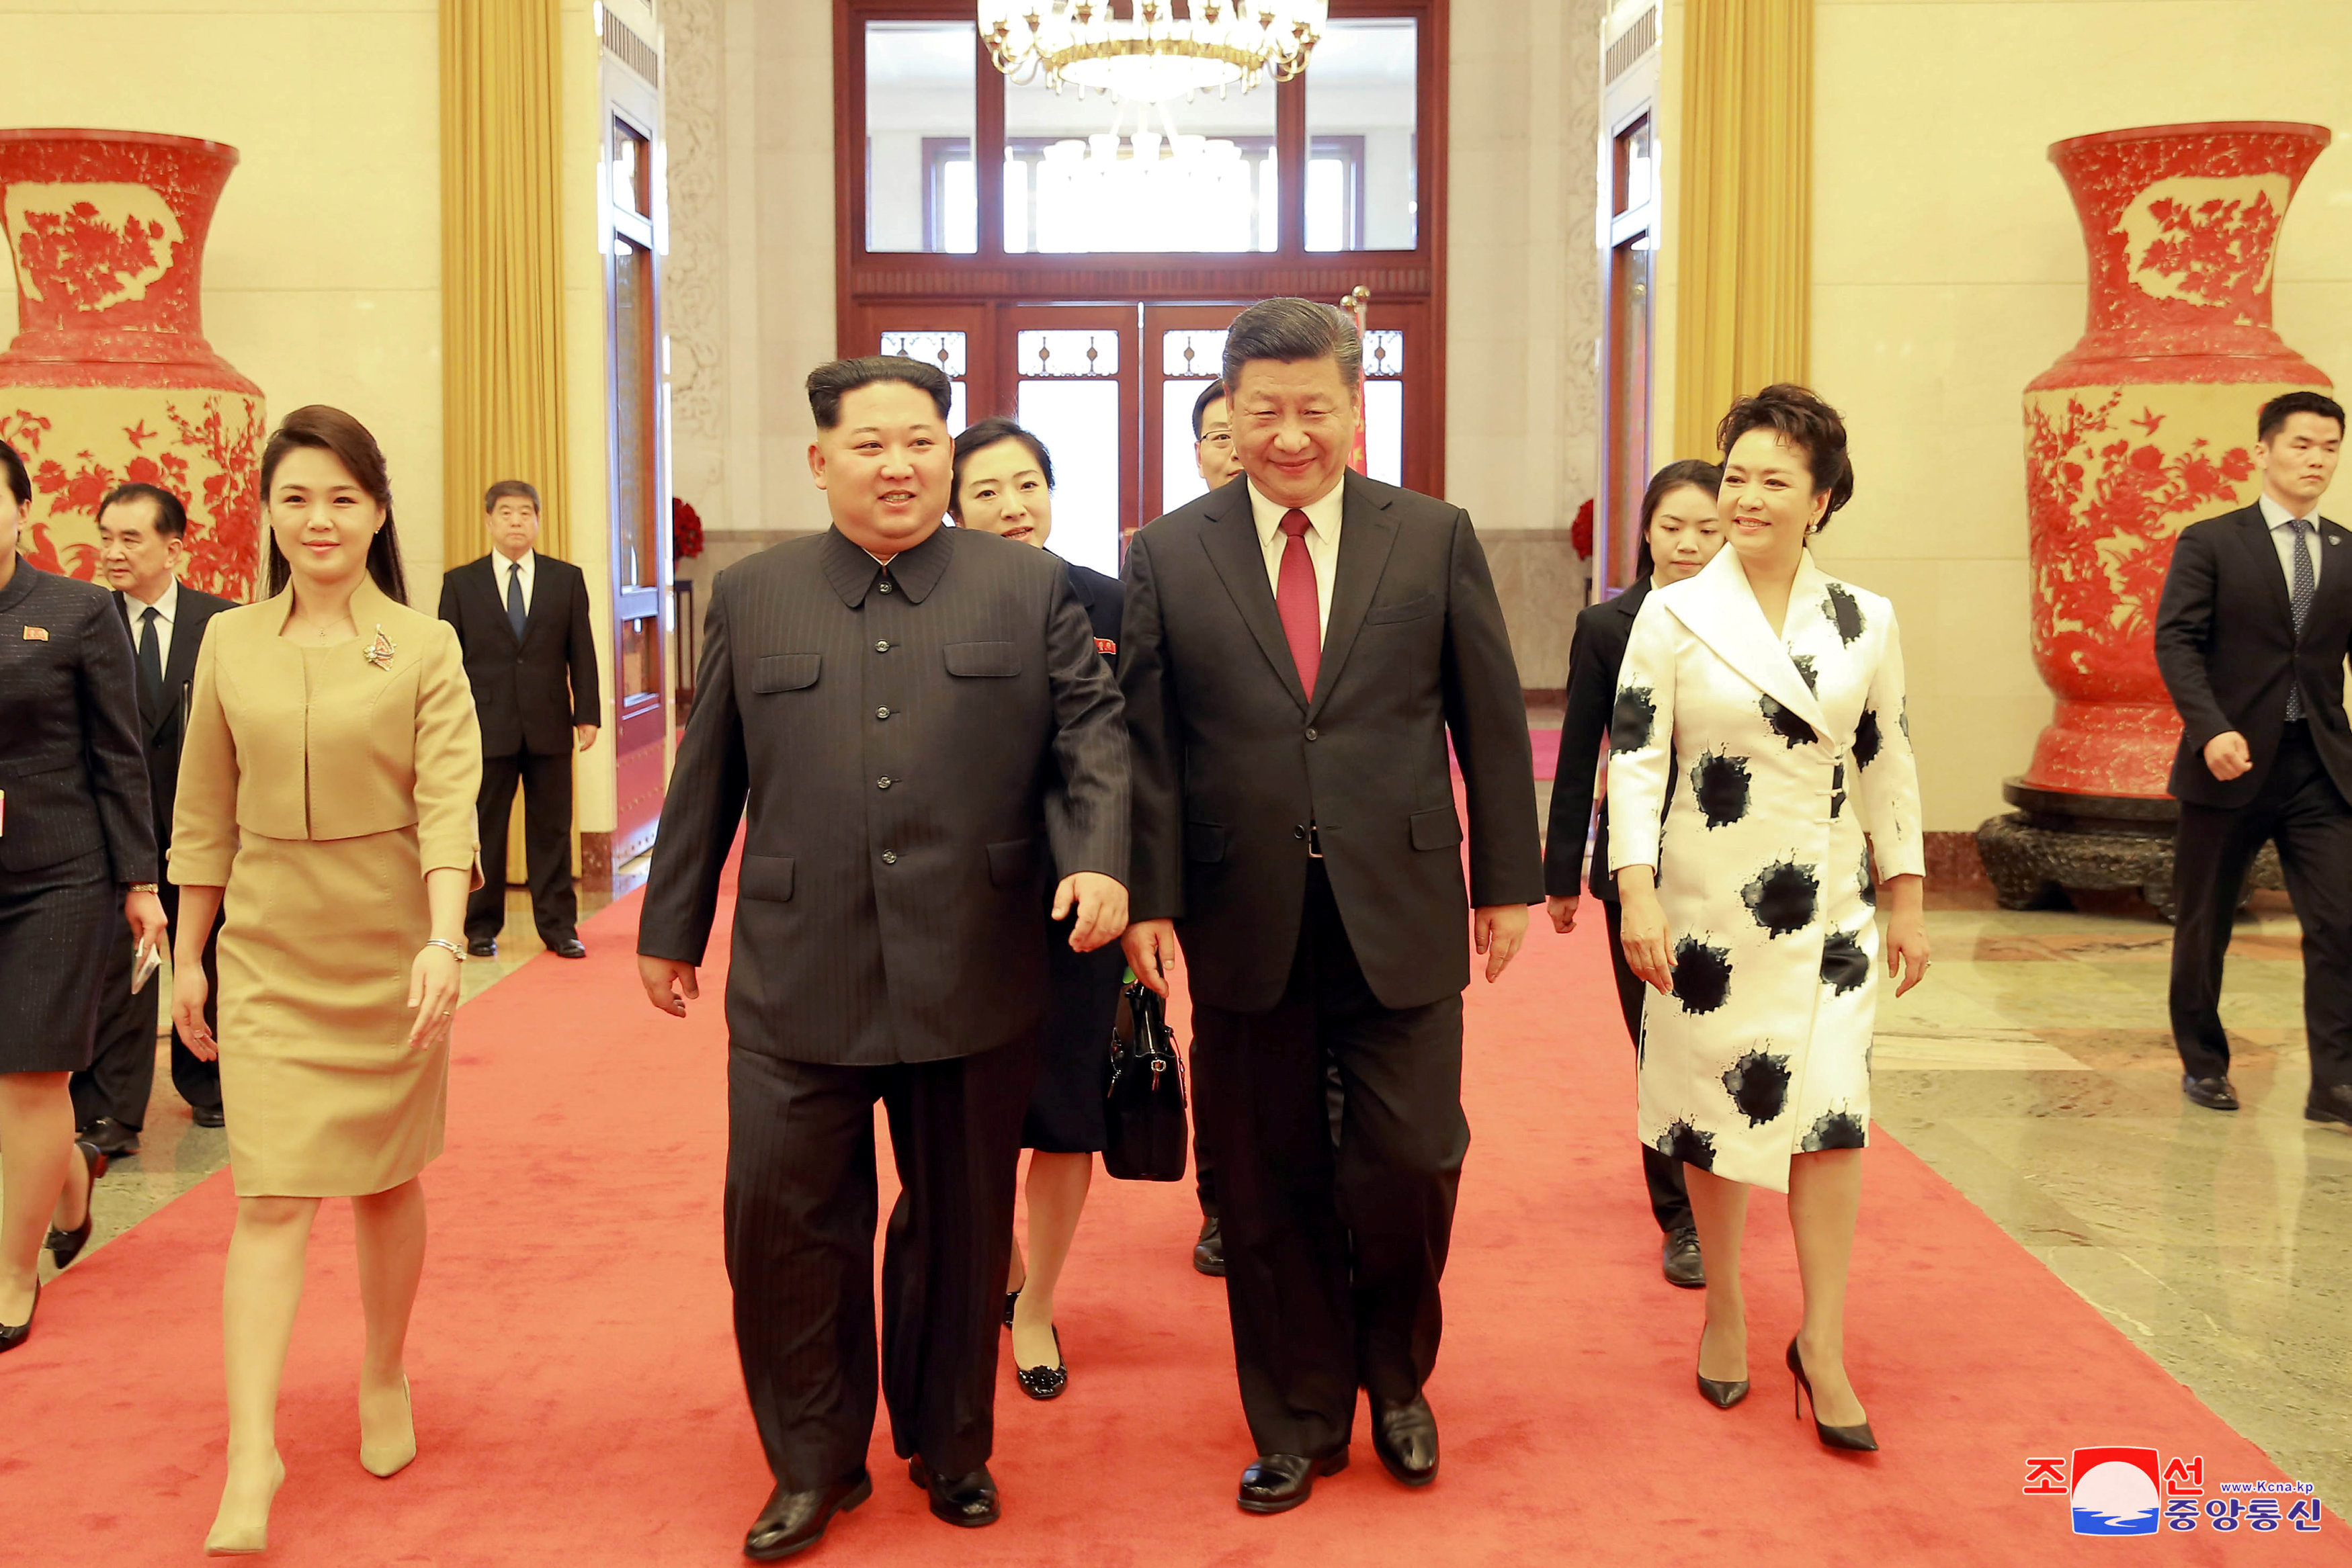 Ραγδαίες οι εξελίξεις στην βορεοκορεατική χερσόνησο μετά το μυστικό ταξίδι Κιμ στο Πεκίνο